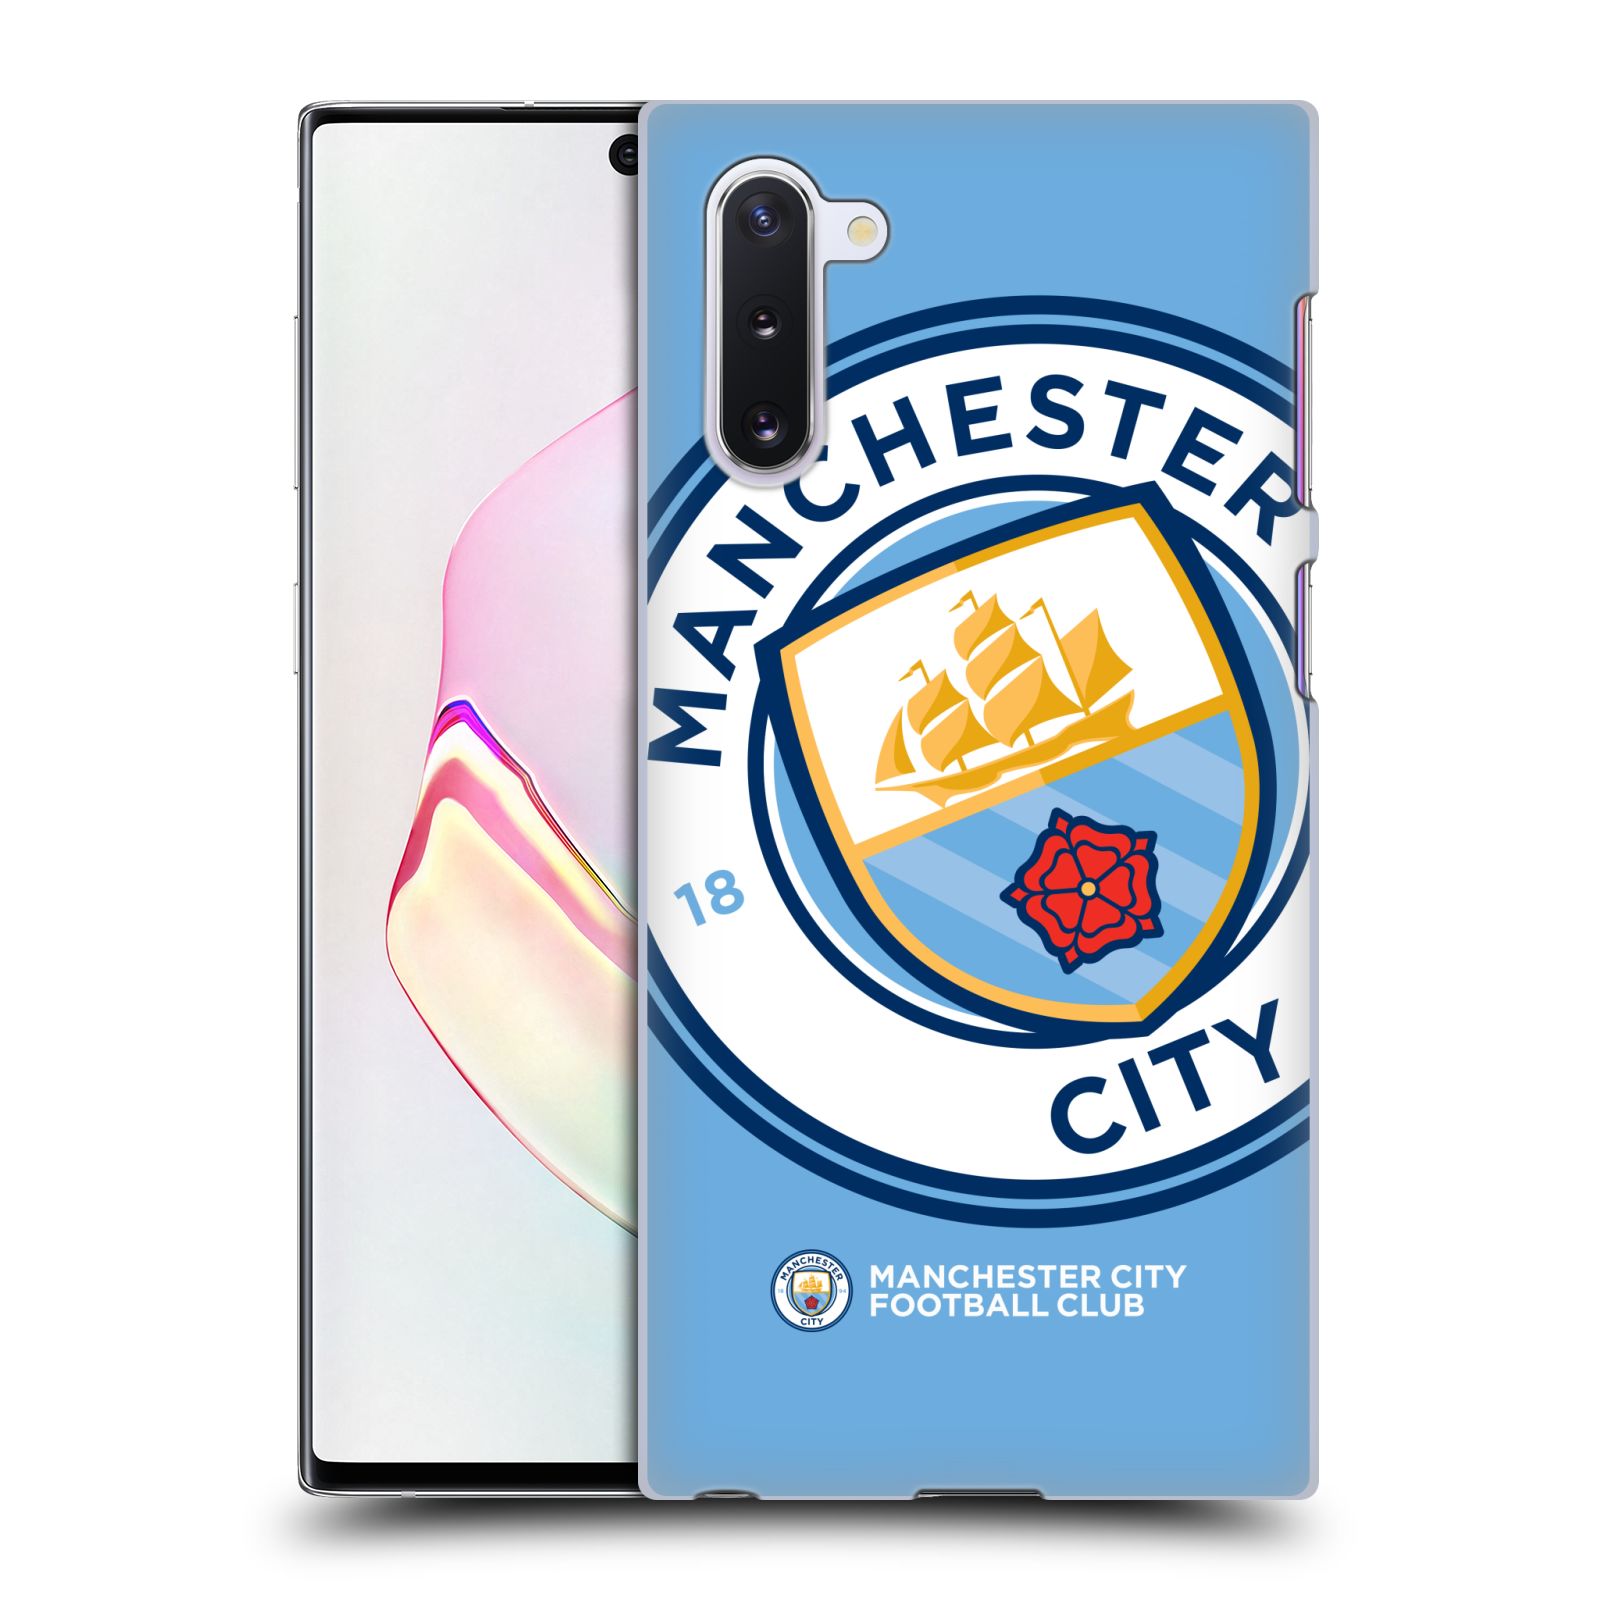 Pouzdro na mobil Samsung Galaxy Note 10 - HEAD CASE - Fotbalový klub Manchester City modrý velký přesahující znak